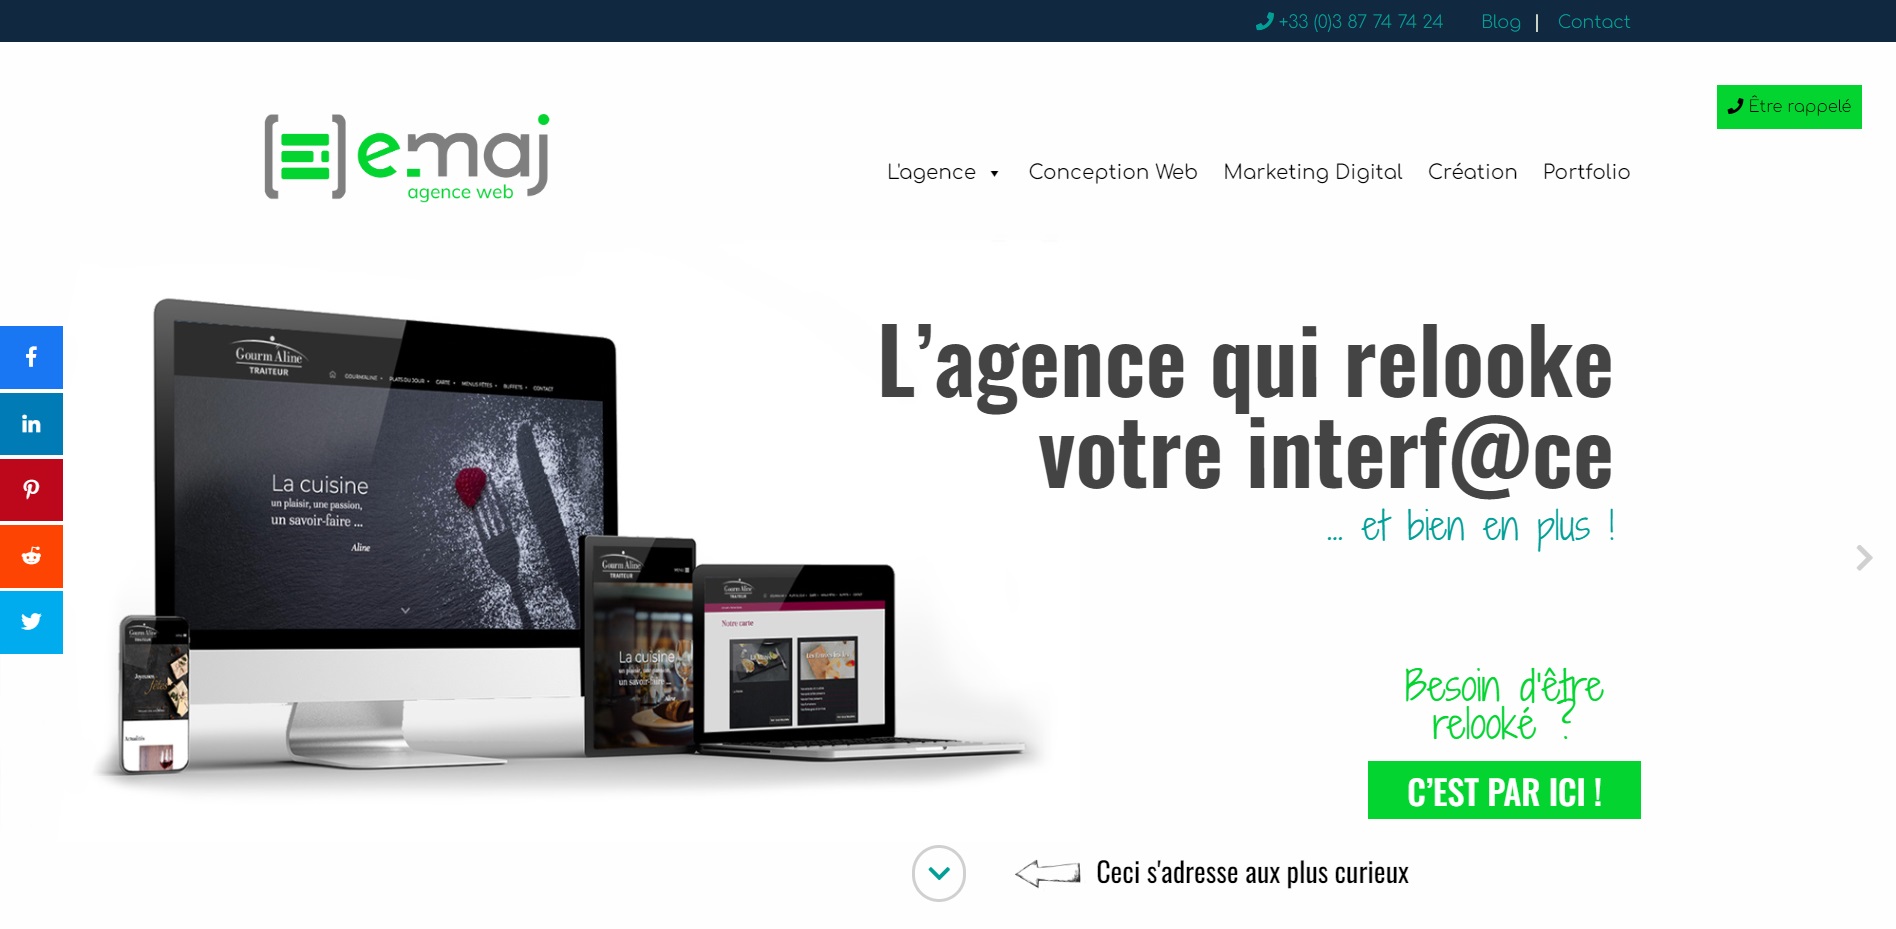  E-maj agence web - Agence Web à Metz